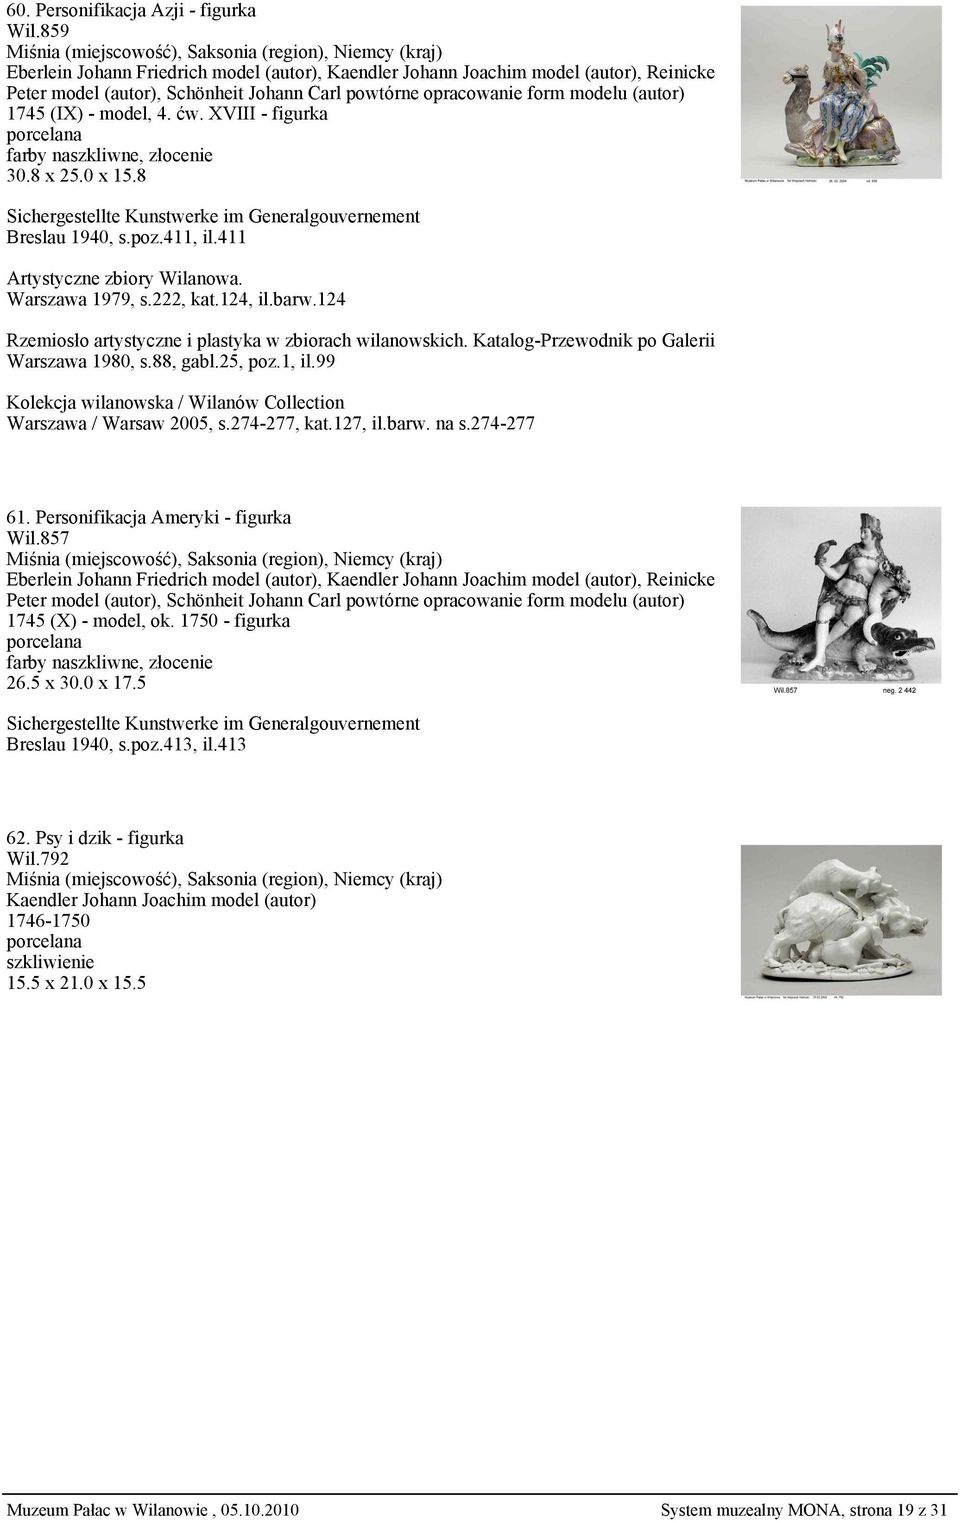 ćw. XVIII - figurka 30.8 x 25.0 x 15.8 Sichergestellte Kunstwerke im Generalgouvernement Breslau 1940, s.poz.411, il.411 Artystyczne zbiory Wilanowa. Warszawa 1979, s.222, kat.124, il.barw.